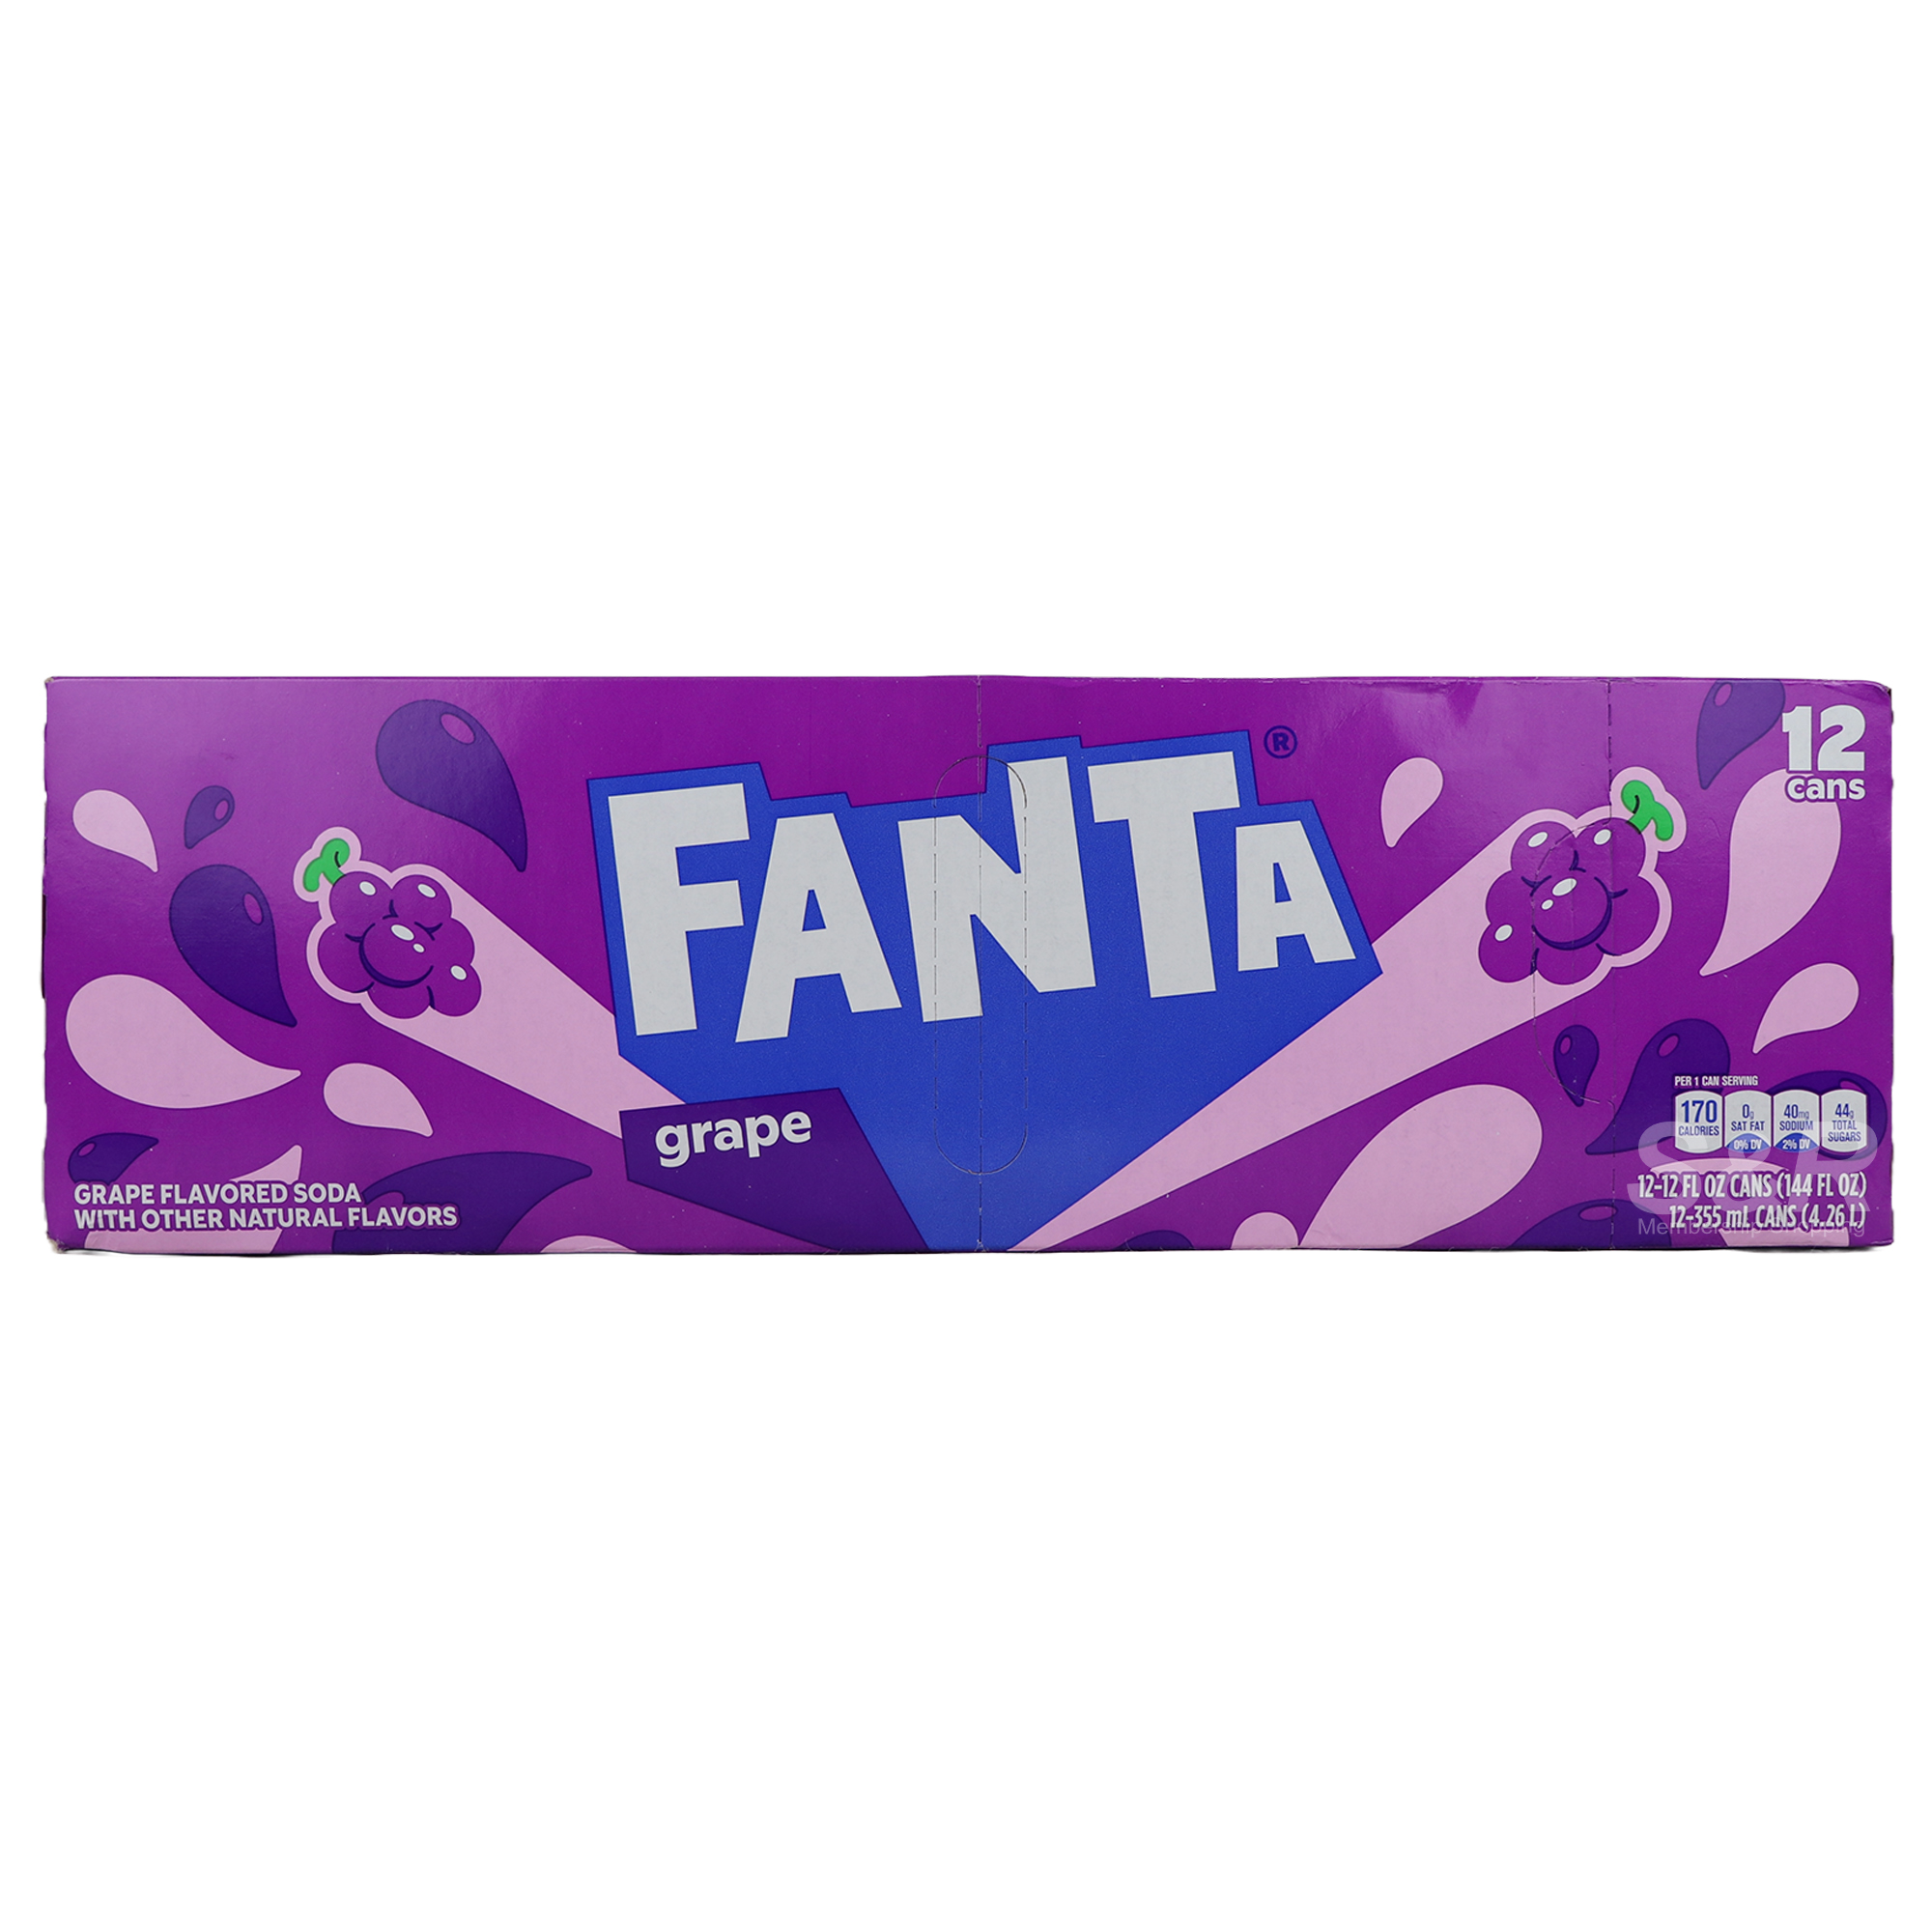 Fanta Grape Flavored Soda 12cans